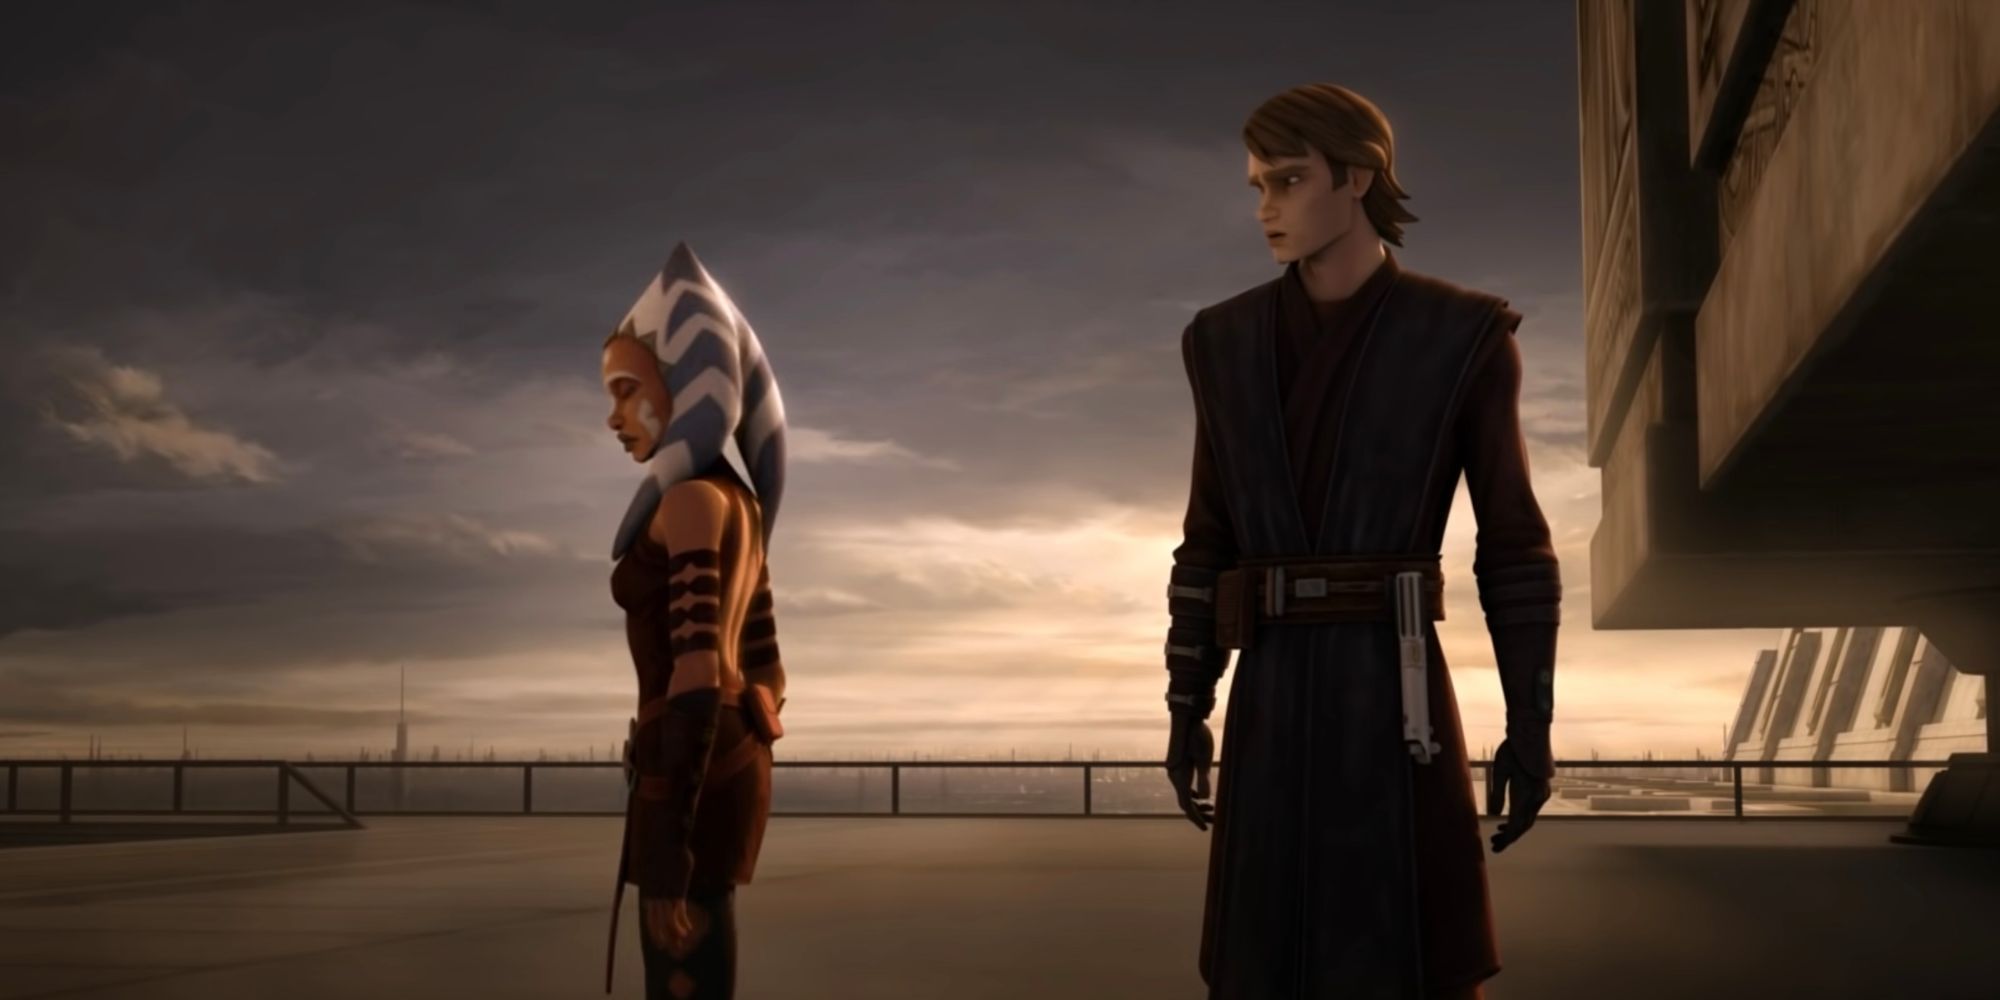 Anakin watches Ahsoka leave Jedi Order in Clone Wars TV series